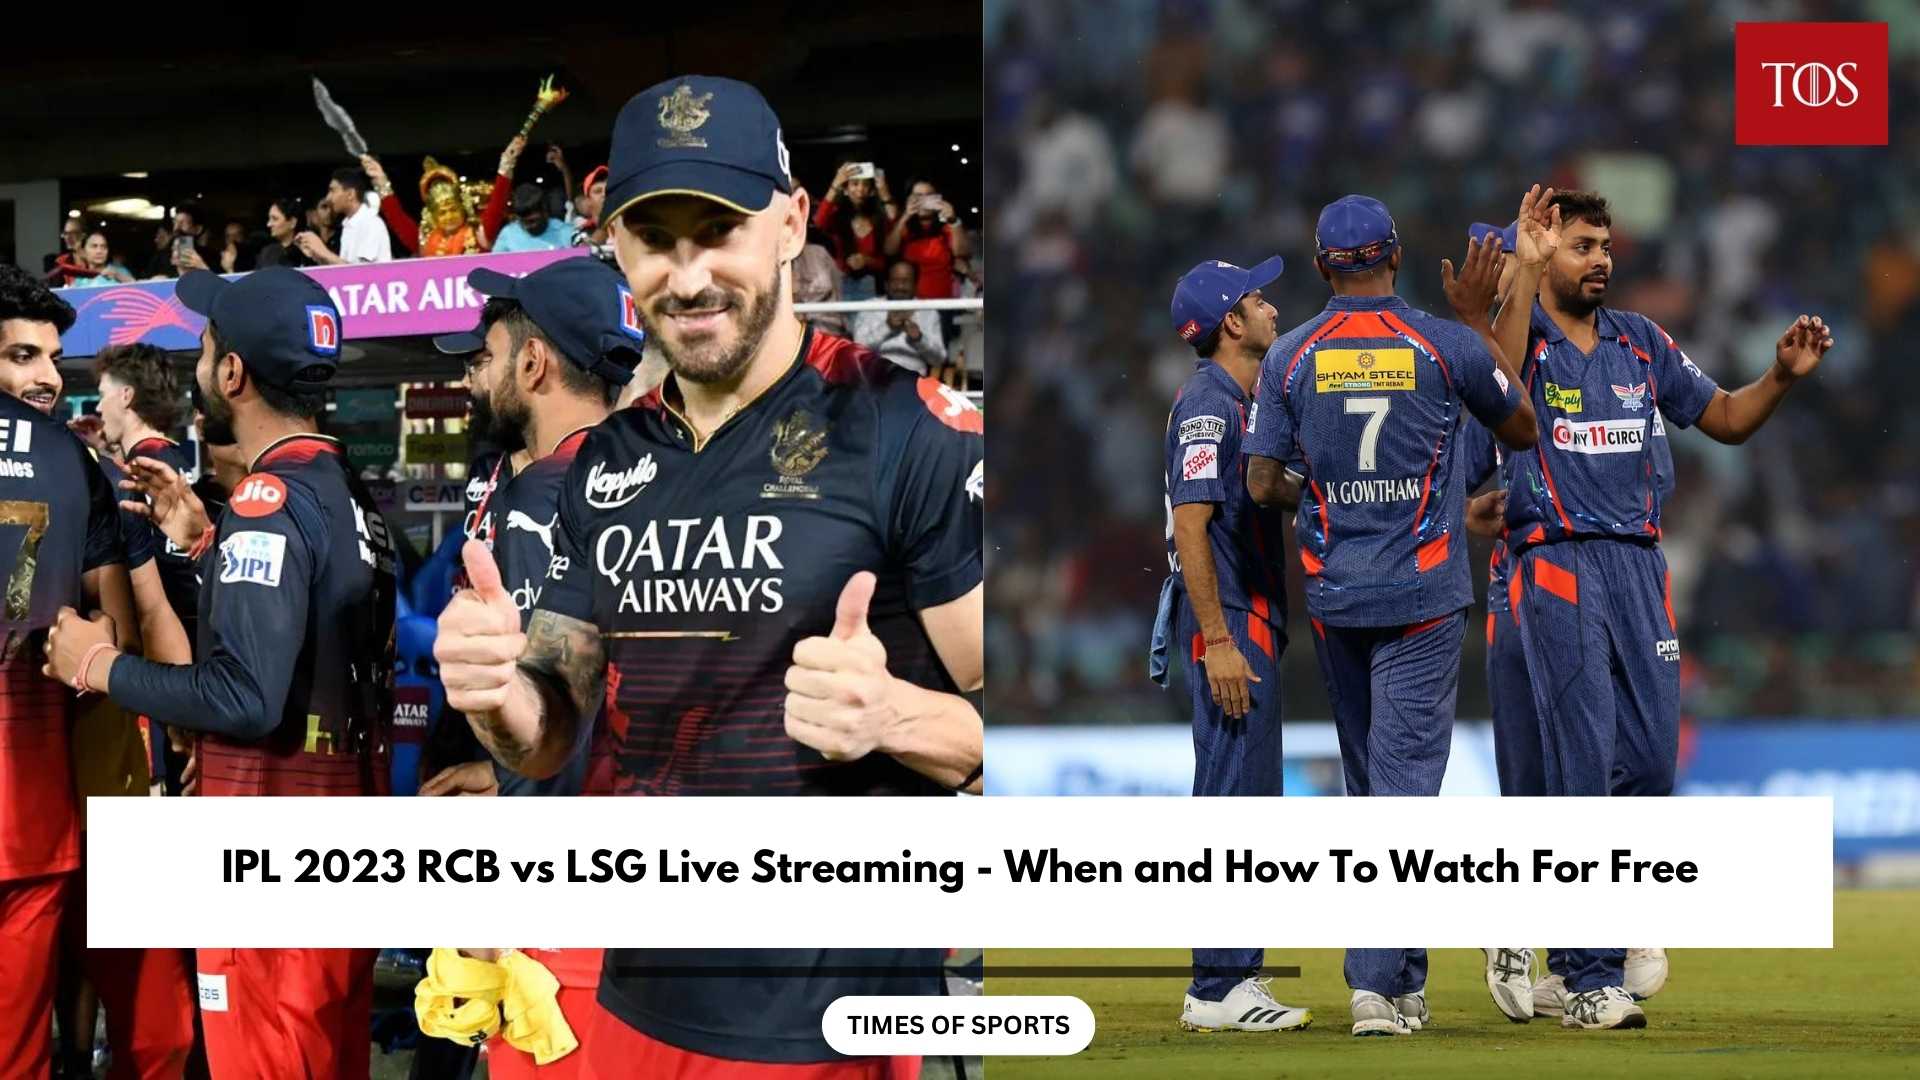 IPL 2023 RCB vs LSG Live Streaming